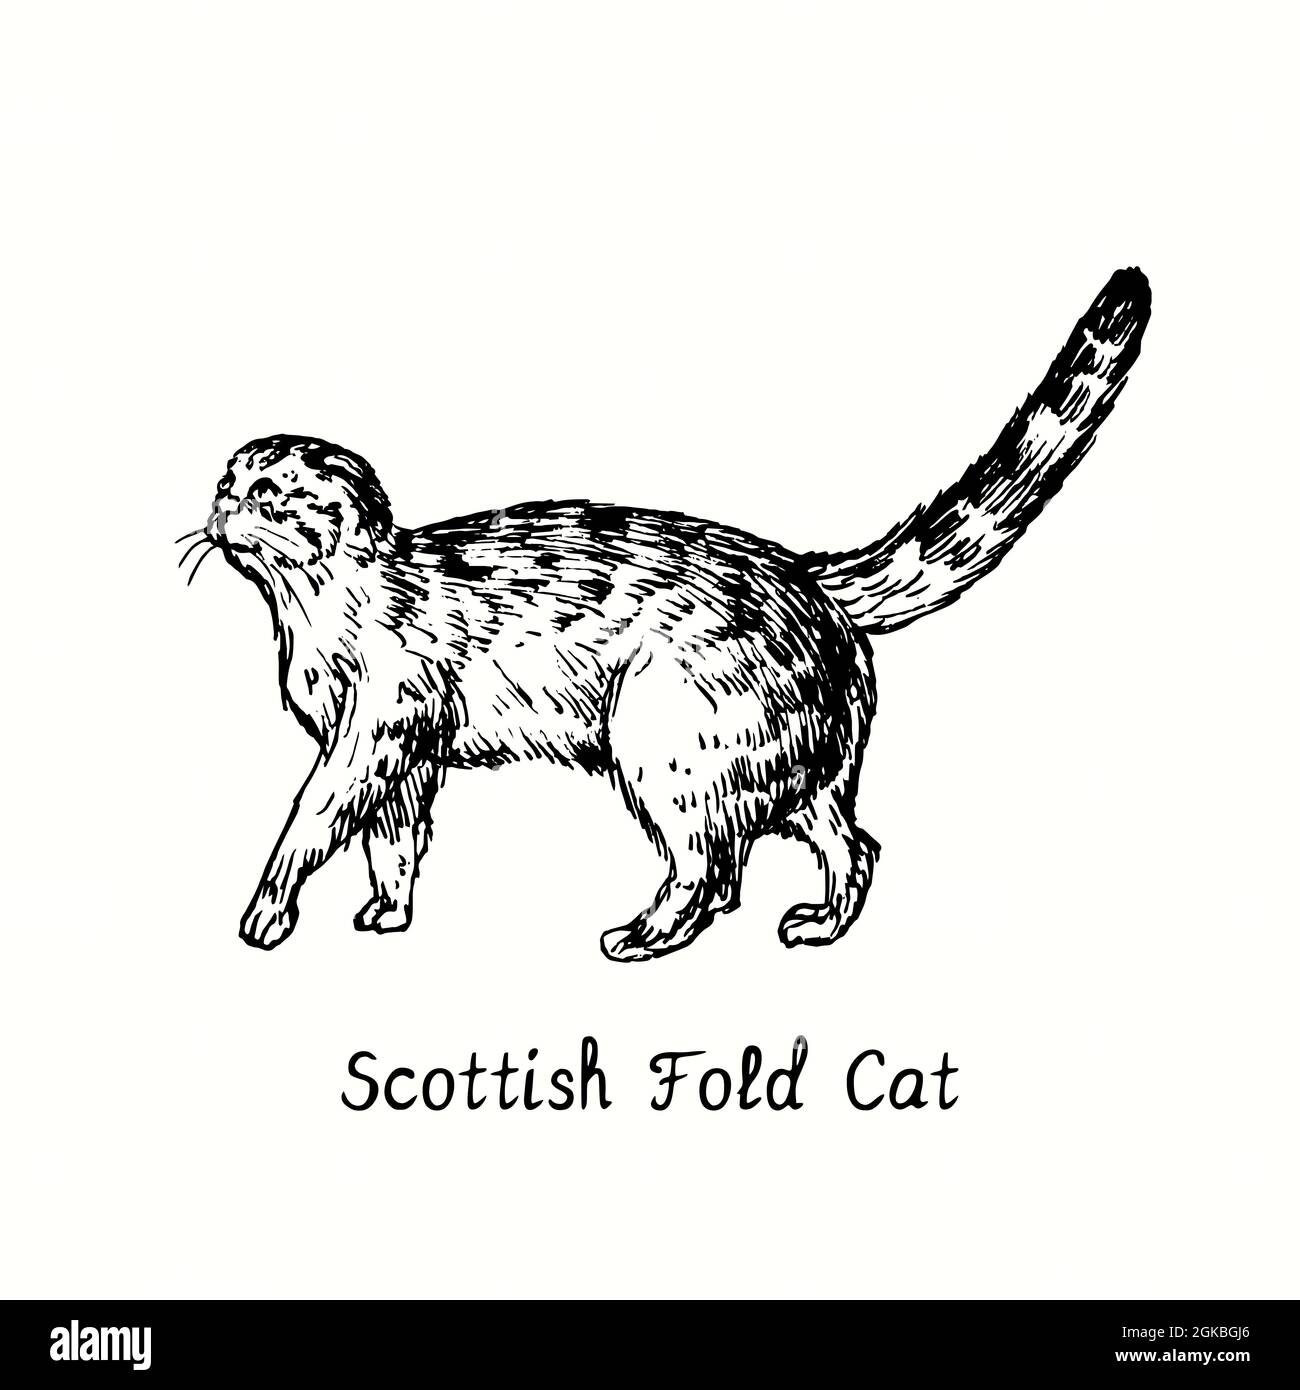 Scotish Fold Cat Standing Seitenansicht. Tusche schwarz-weiße Doodle Zeichnung im Holzschnitt-Stil. Stockfoto